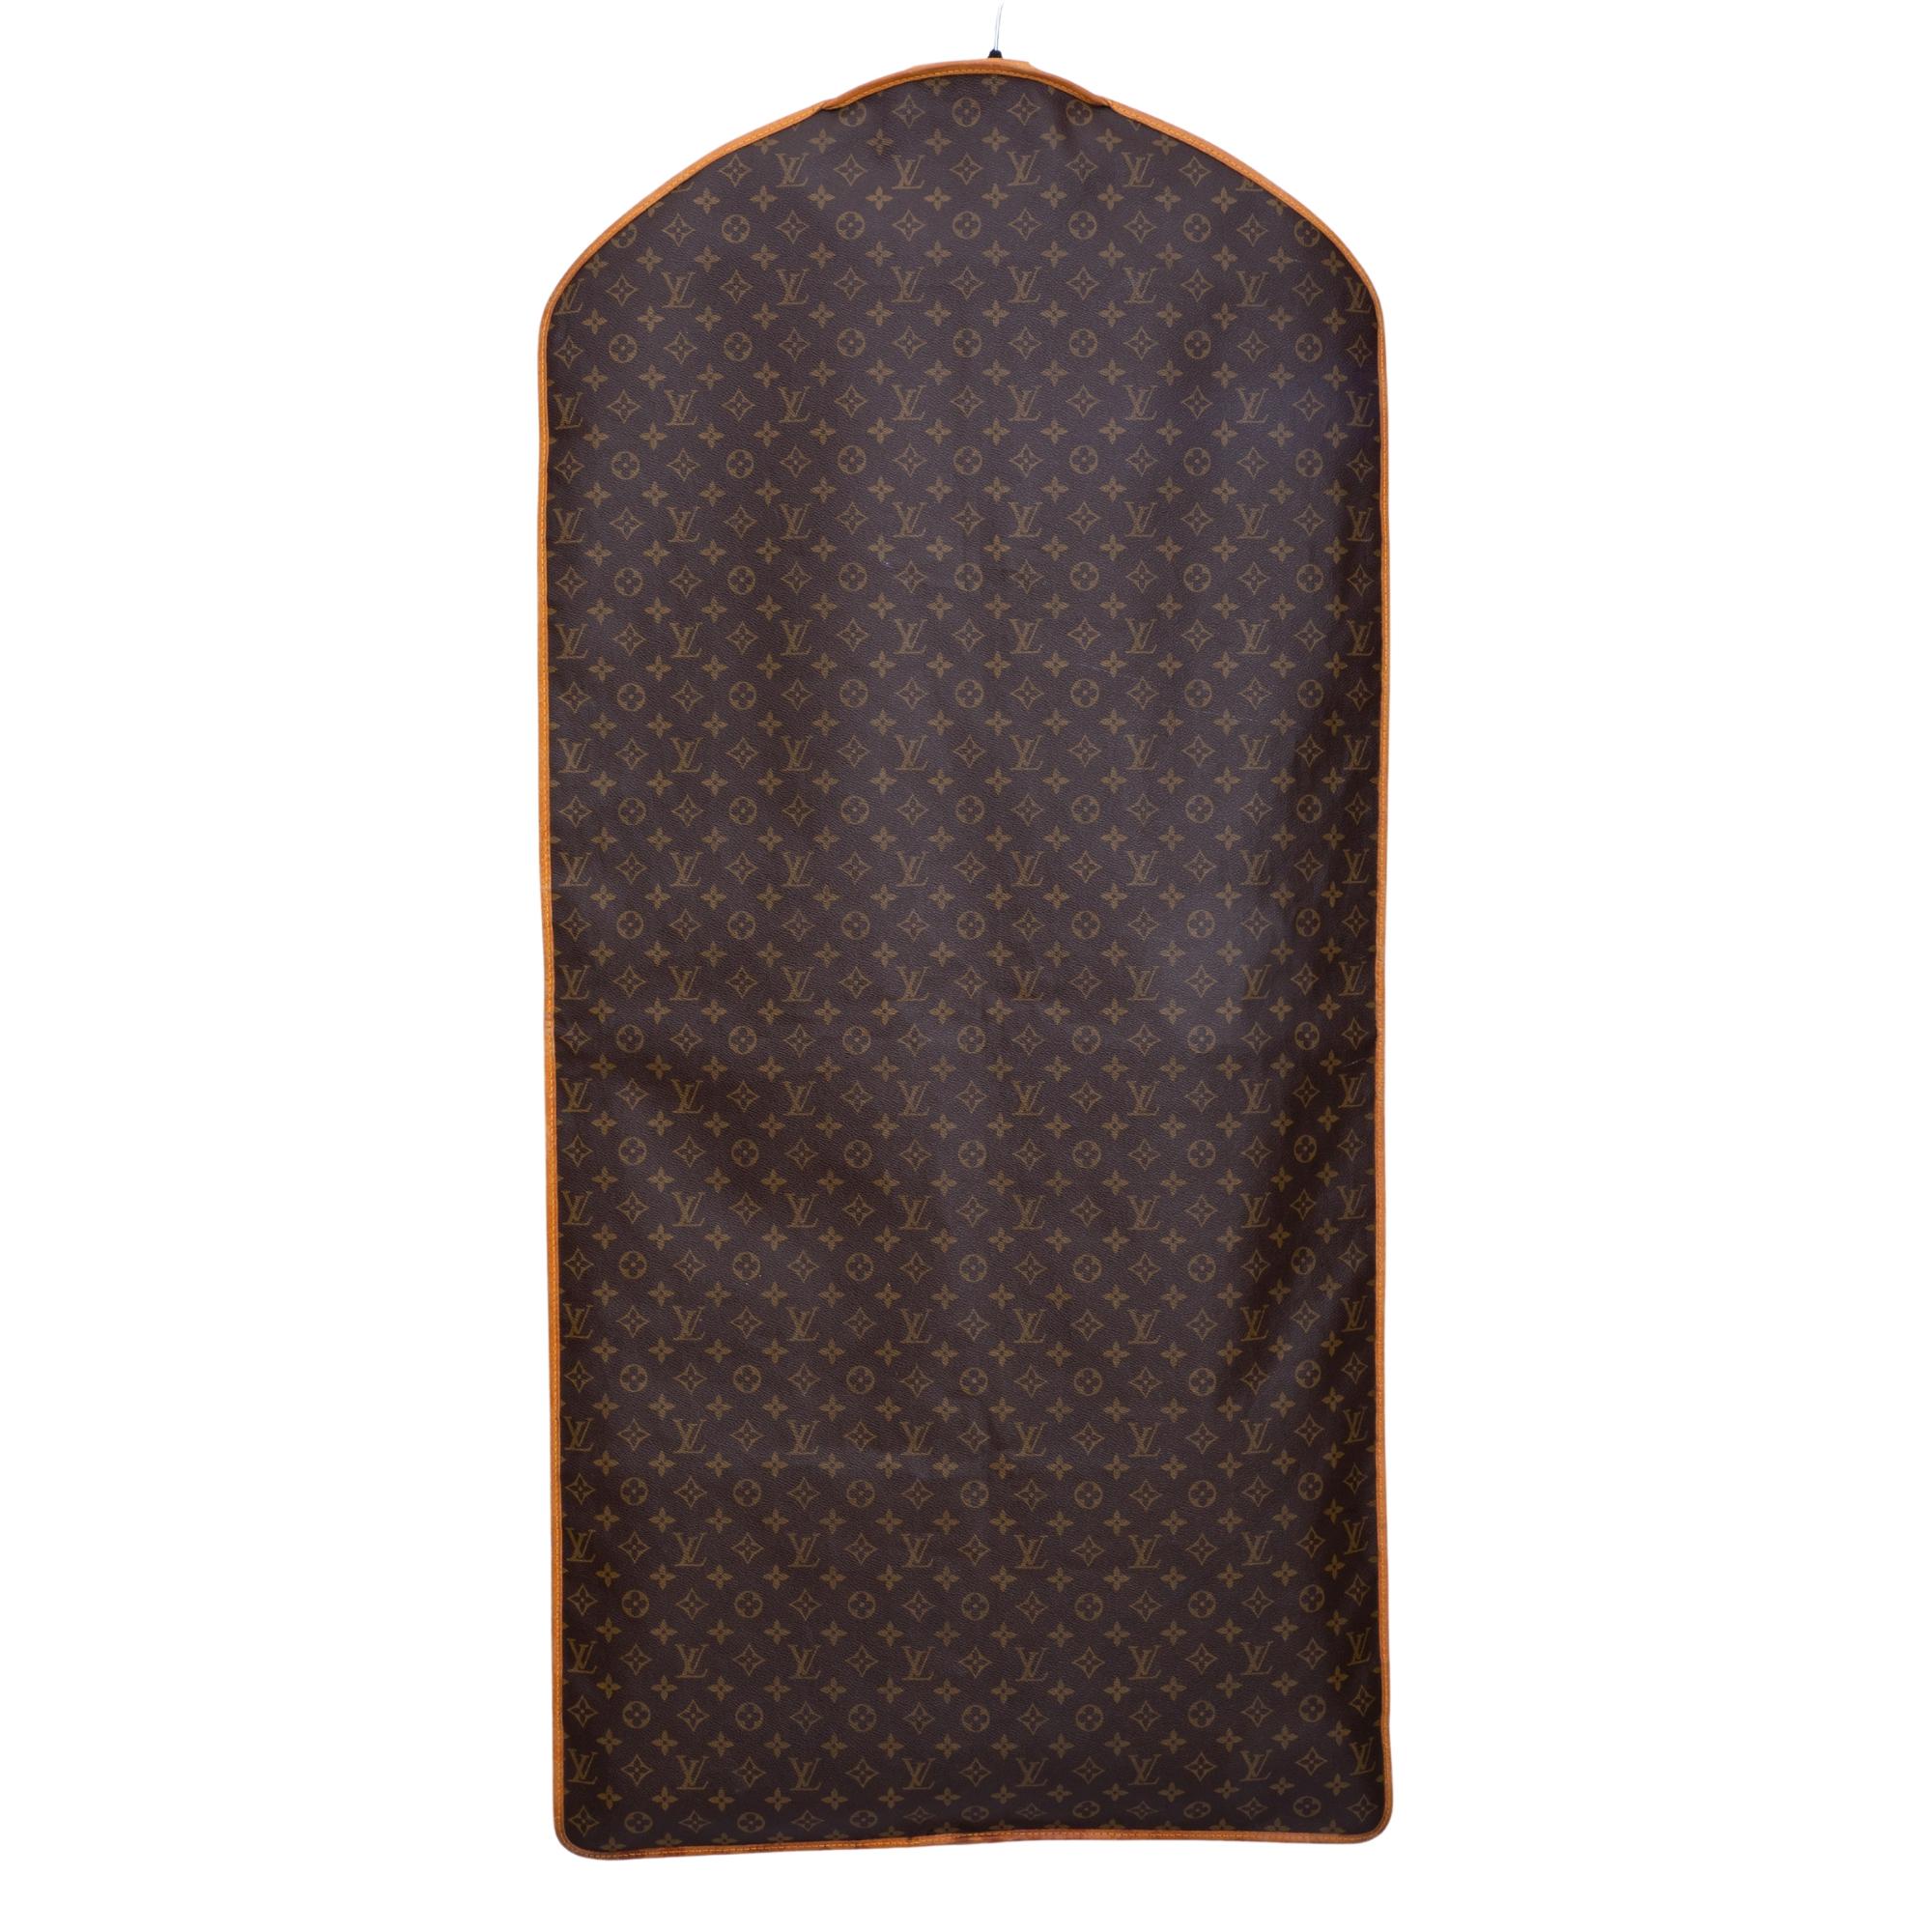 Ce porte-bagages est réalisé en Monogramme Louis Vuitton sur toile. Le sac à vêtements est orné d'une bordure en cuir sur le pourtour, d'une longue fermeture à glissière au centre et d'un fin tissu brun à l'intérieur.

COULEUR : Marron
MATERIAL :